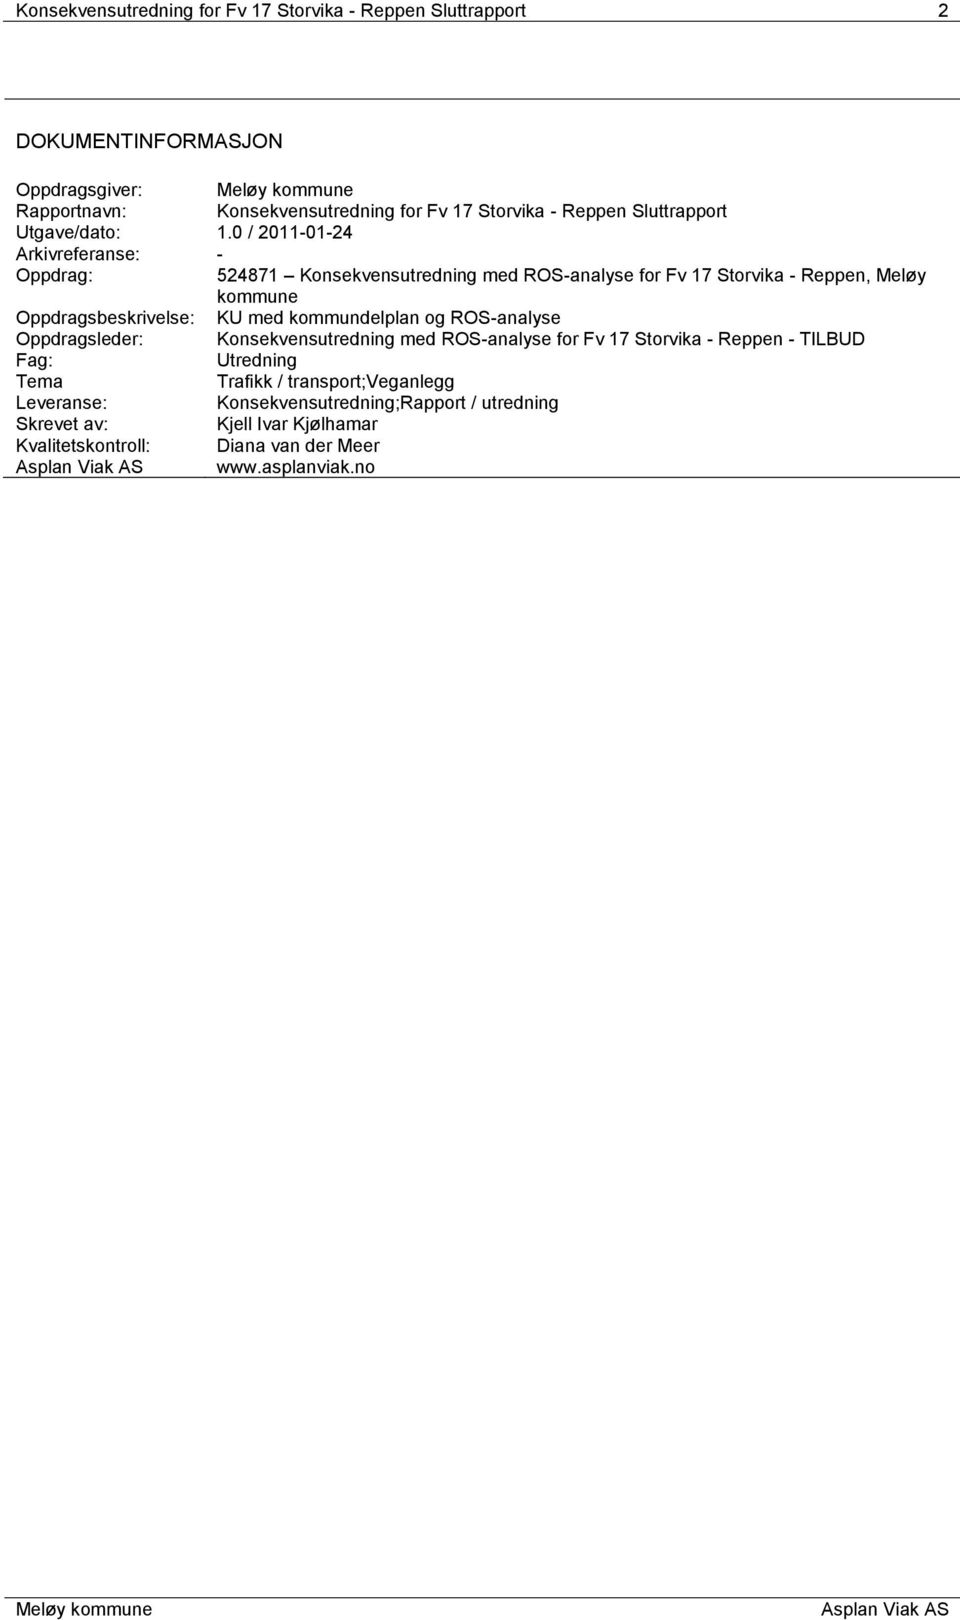 0 / 2011-01-24 Arkivreferanse: - Oppdrag: 524871 Konsekvensutredning med ROS-analyse for Fv 17 Storvika - Reppen, Meløy kommune Oppdragsbeskrivelse: KU med